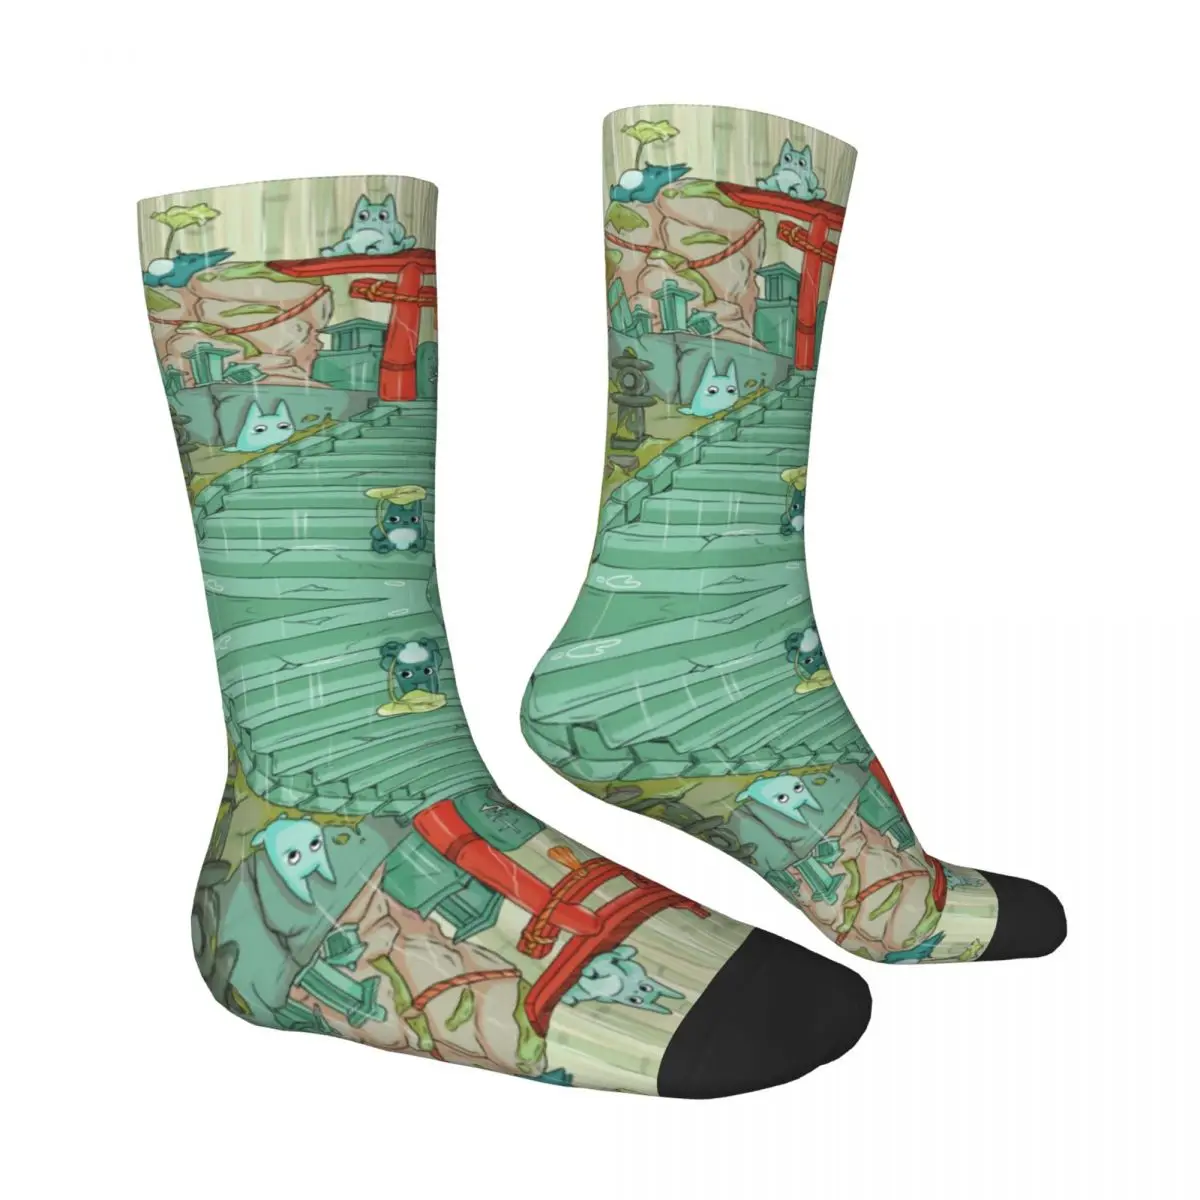 Носки Rhythm Of Rain с повседневным рисунком, лучшая покупка, забавные компрессионные носки для рюкзаков контрастного цвета